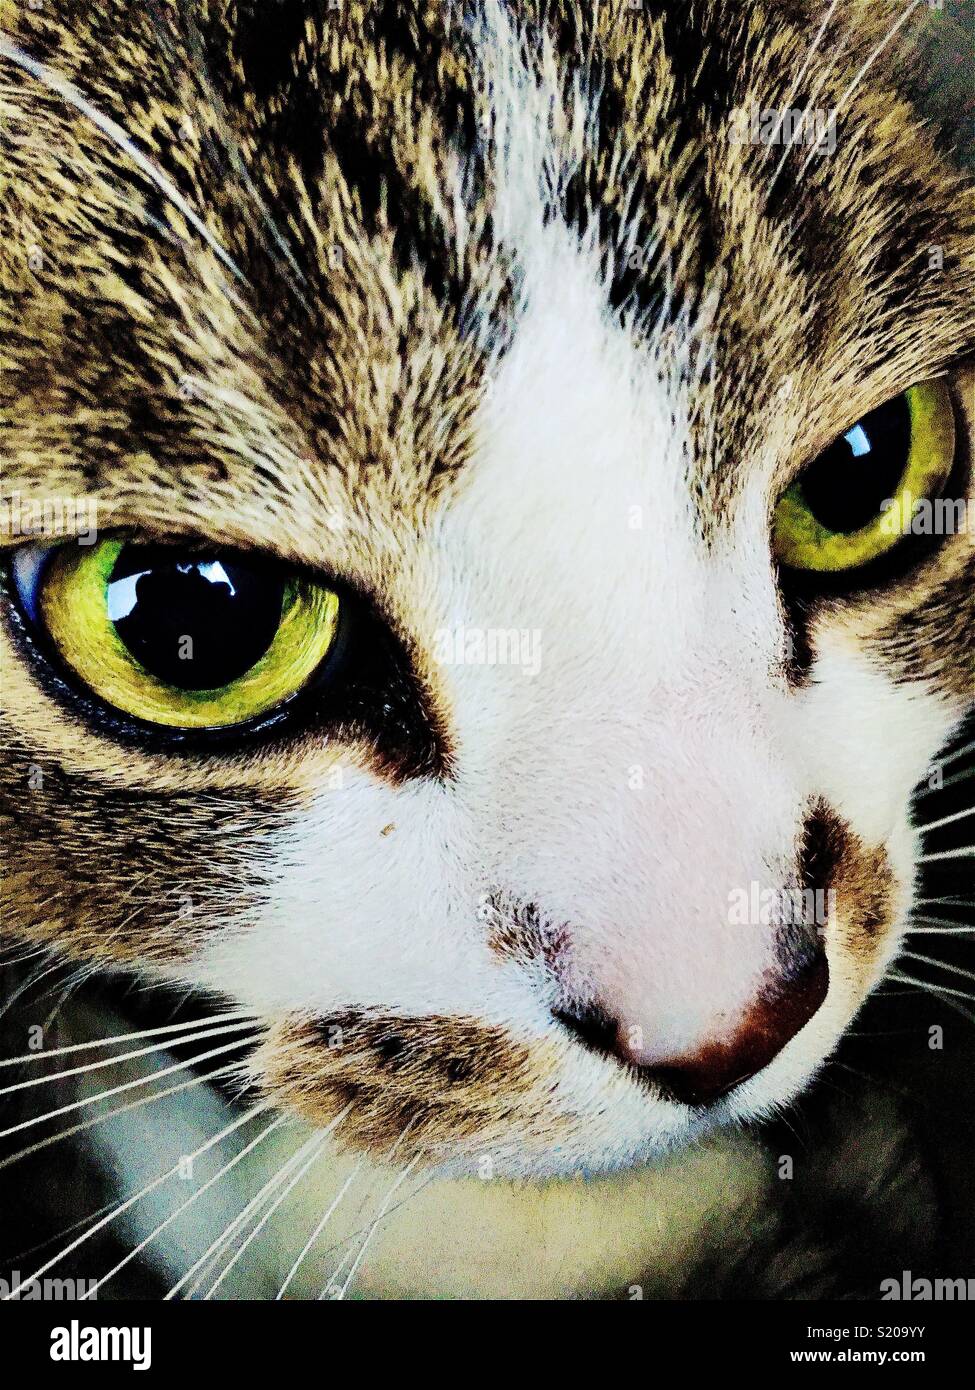 Cat face closeup Stock Photo